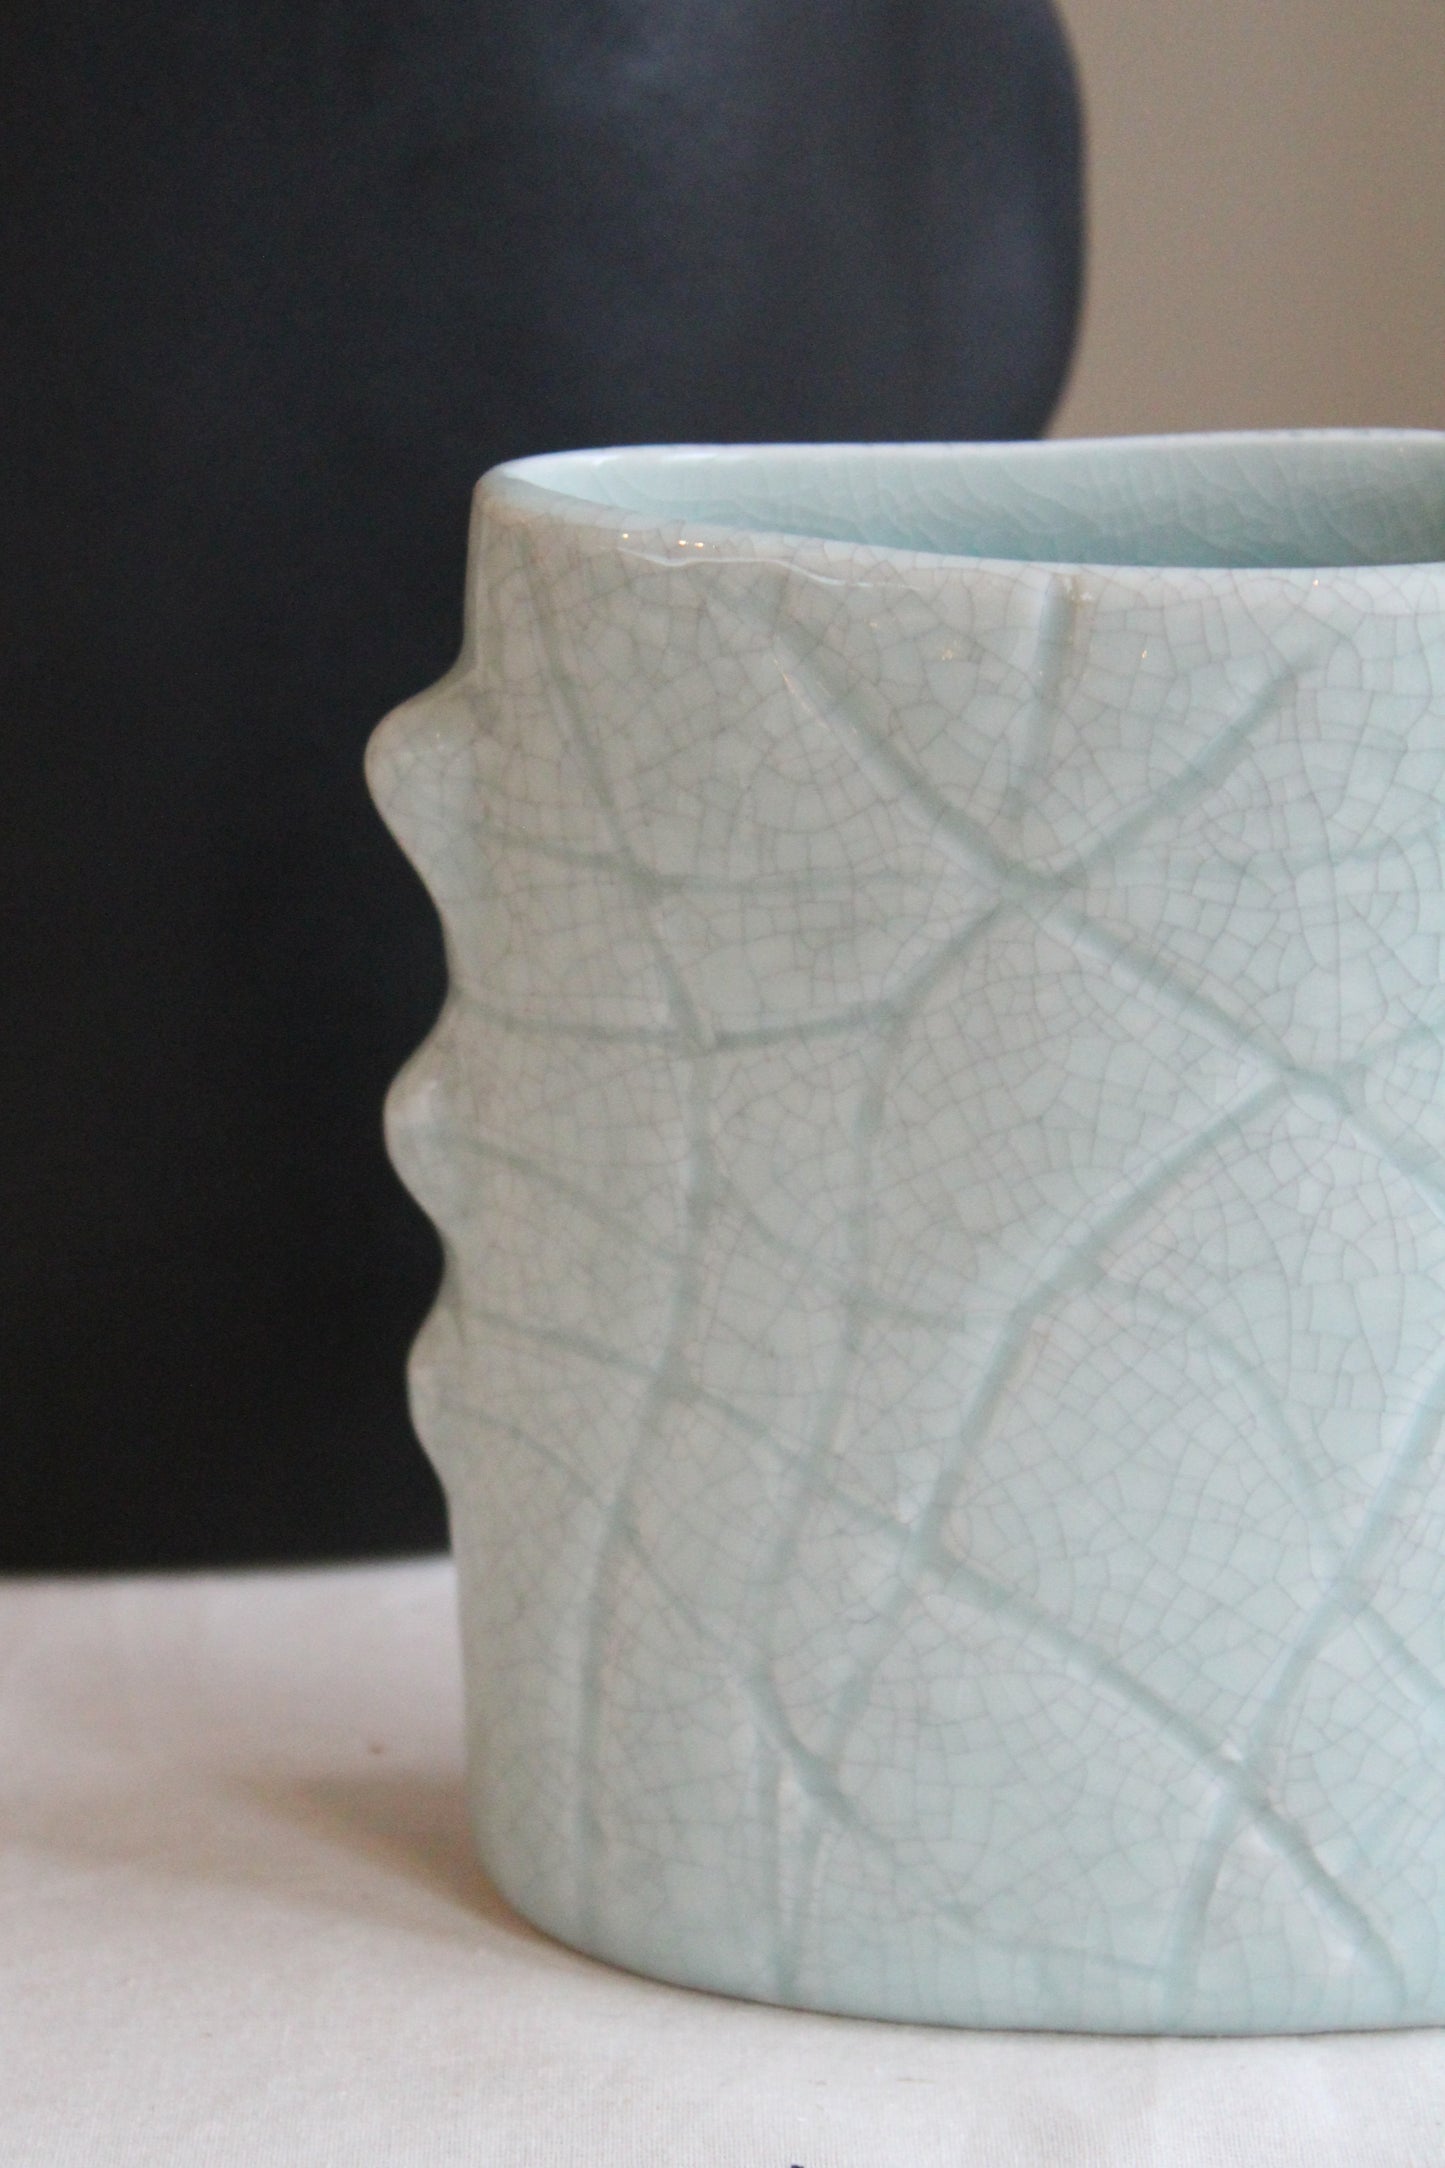 Close-up of the Homere Celadon Vase by Jars Ceramistes.